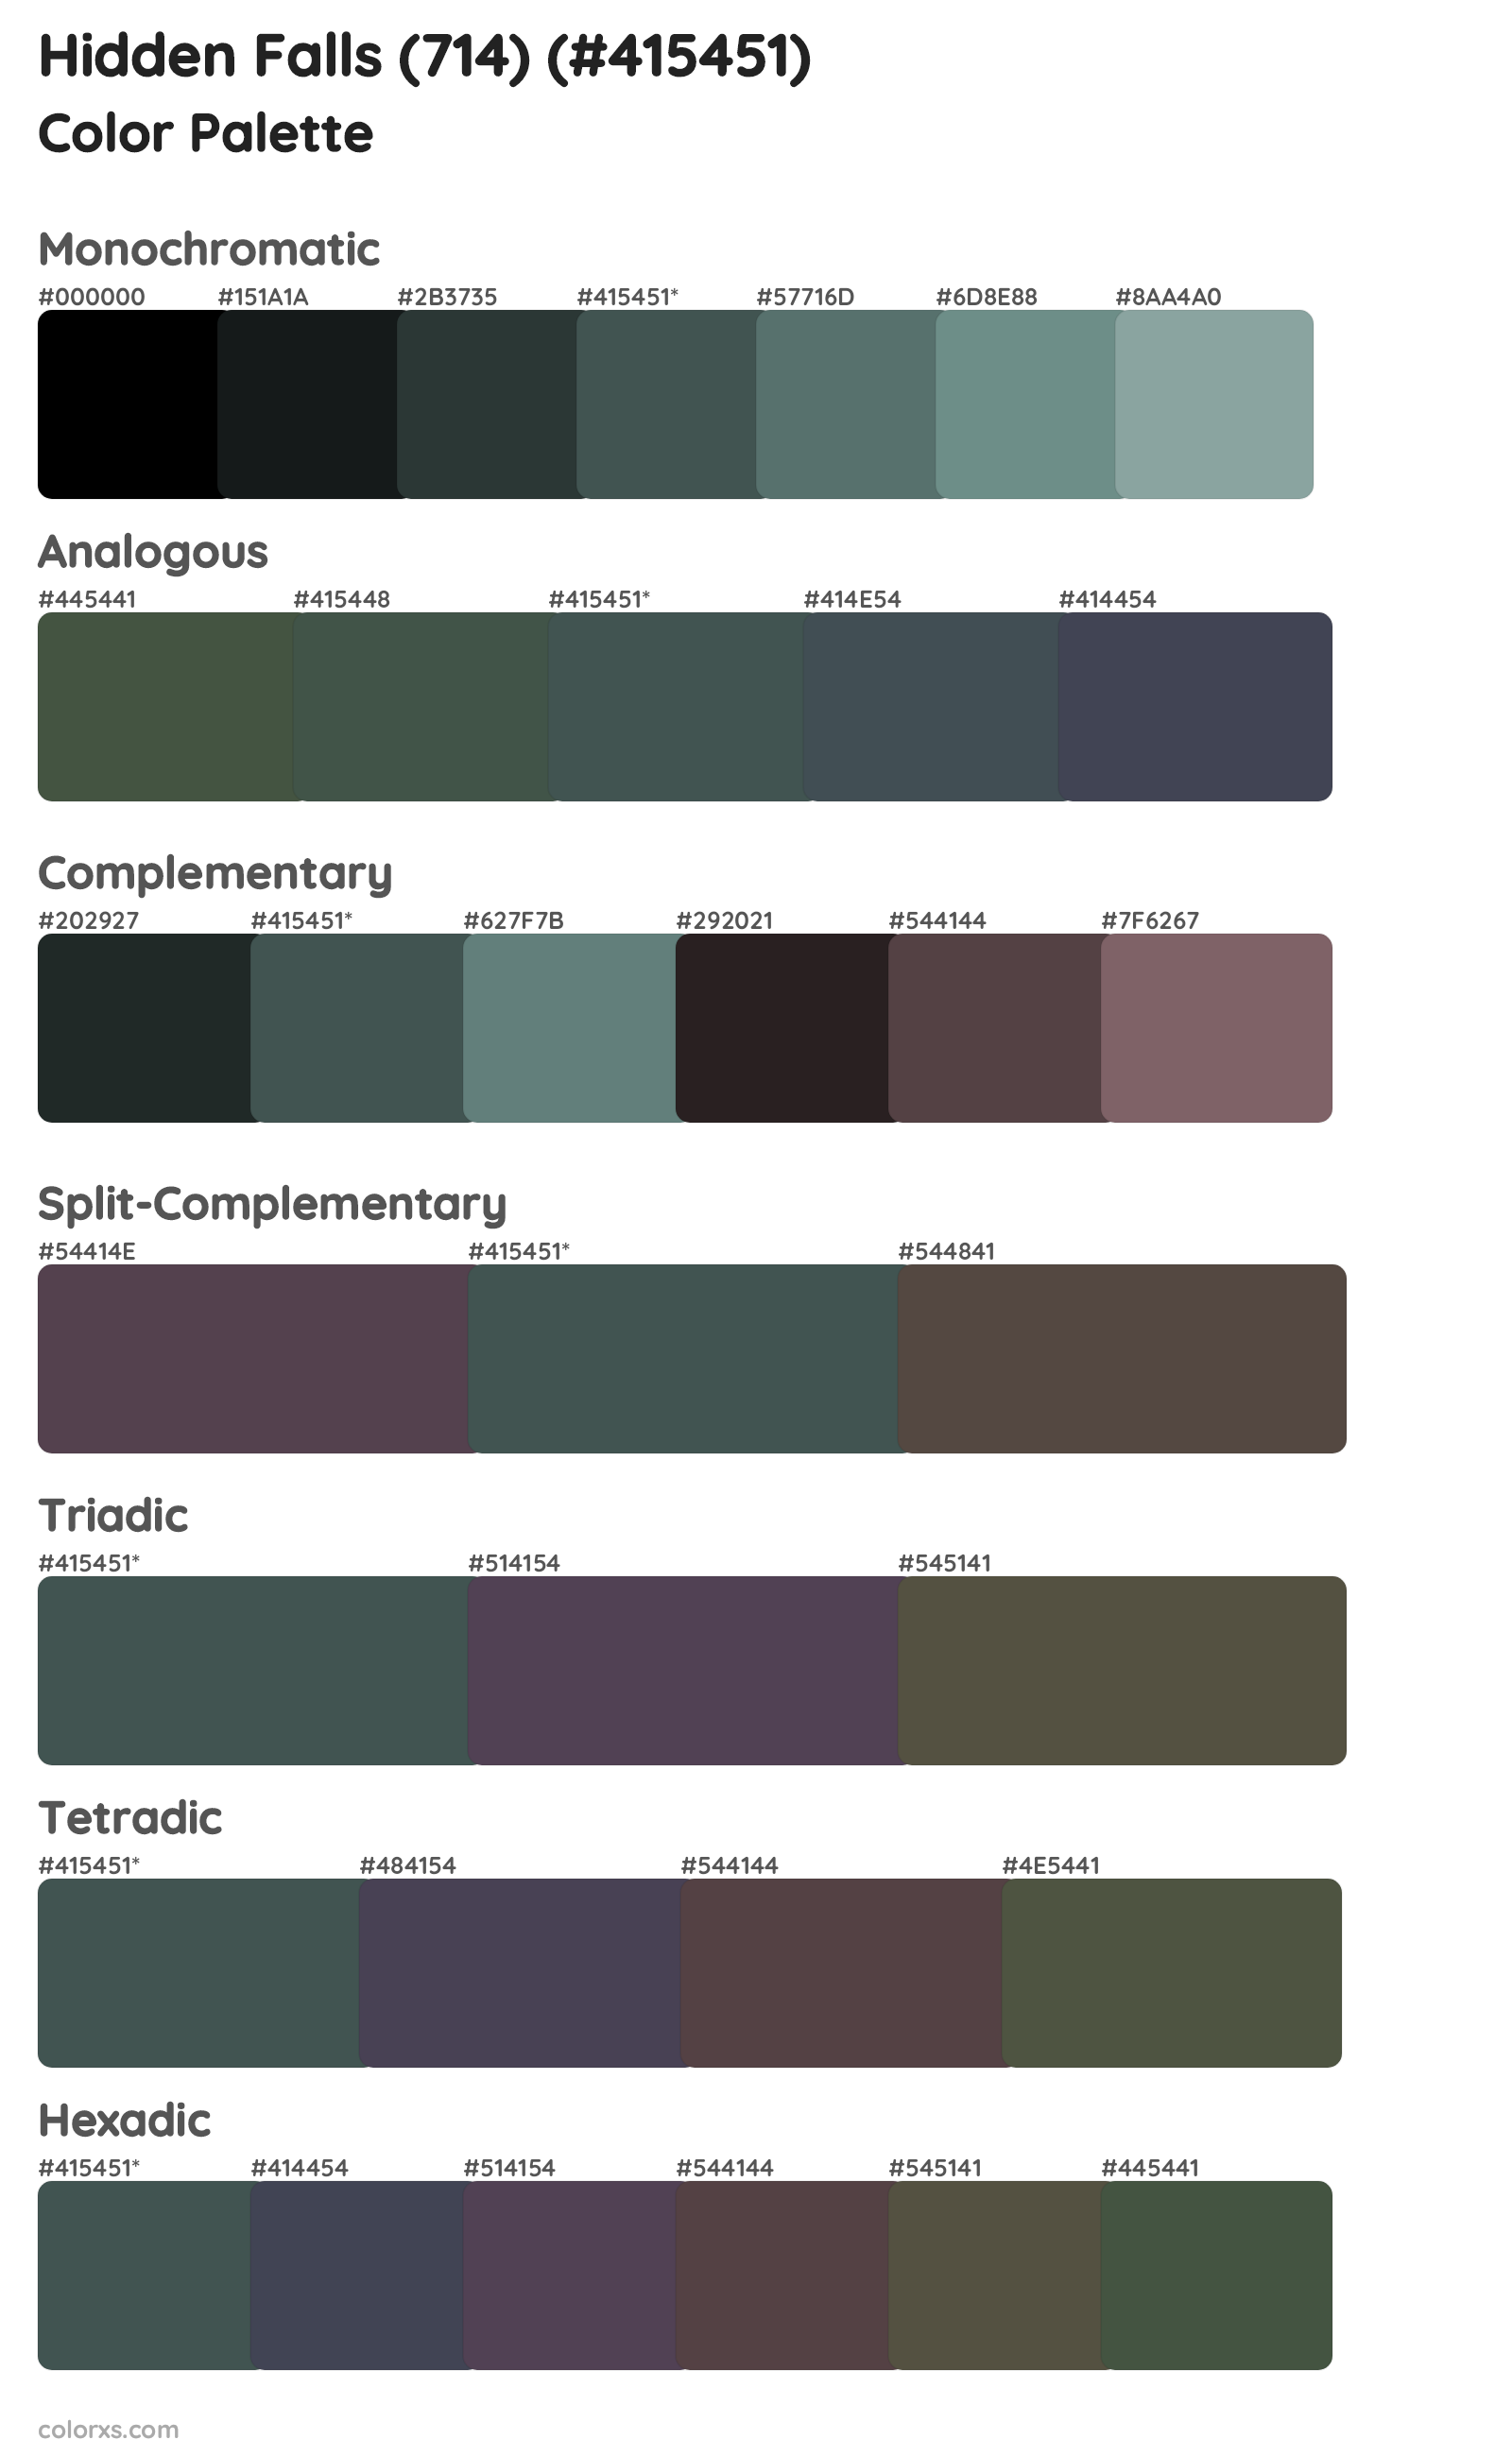 Hidden Falls (714) Color Scheme Palettes